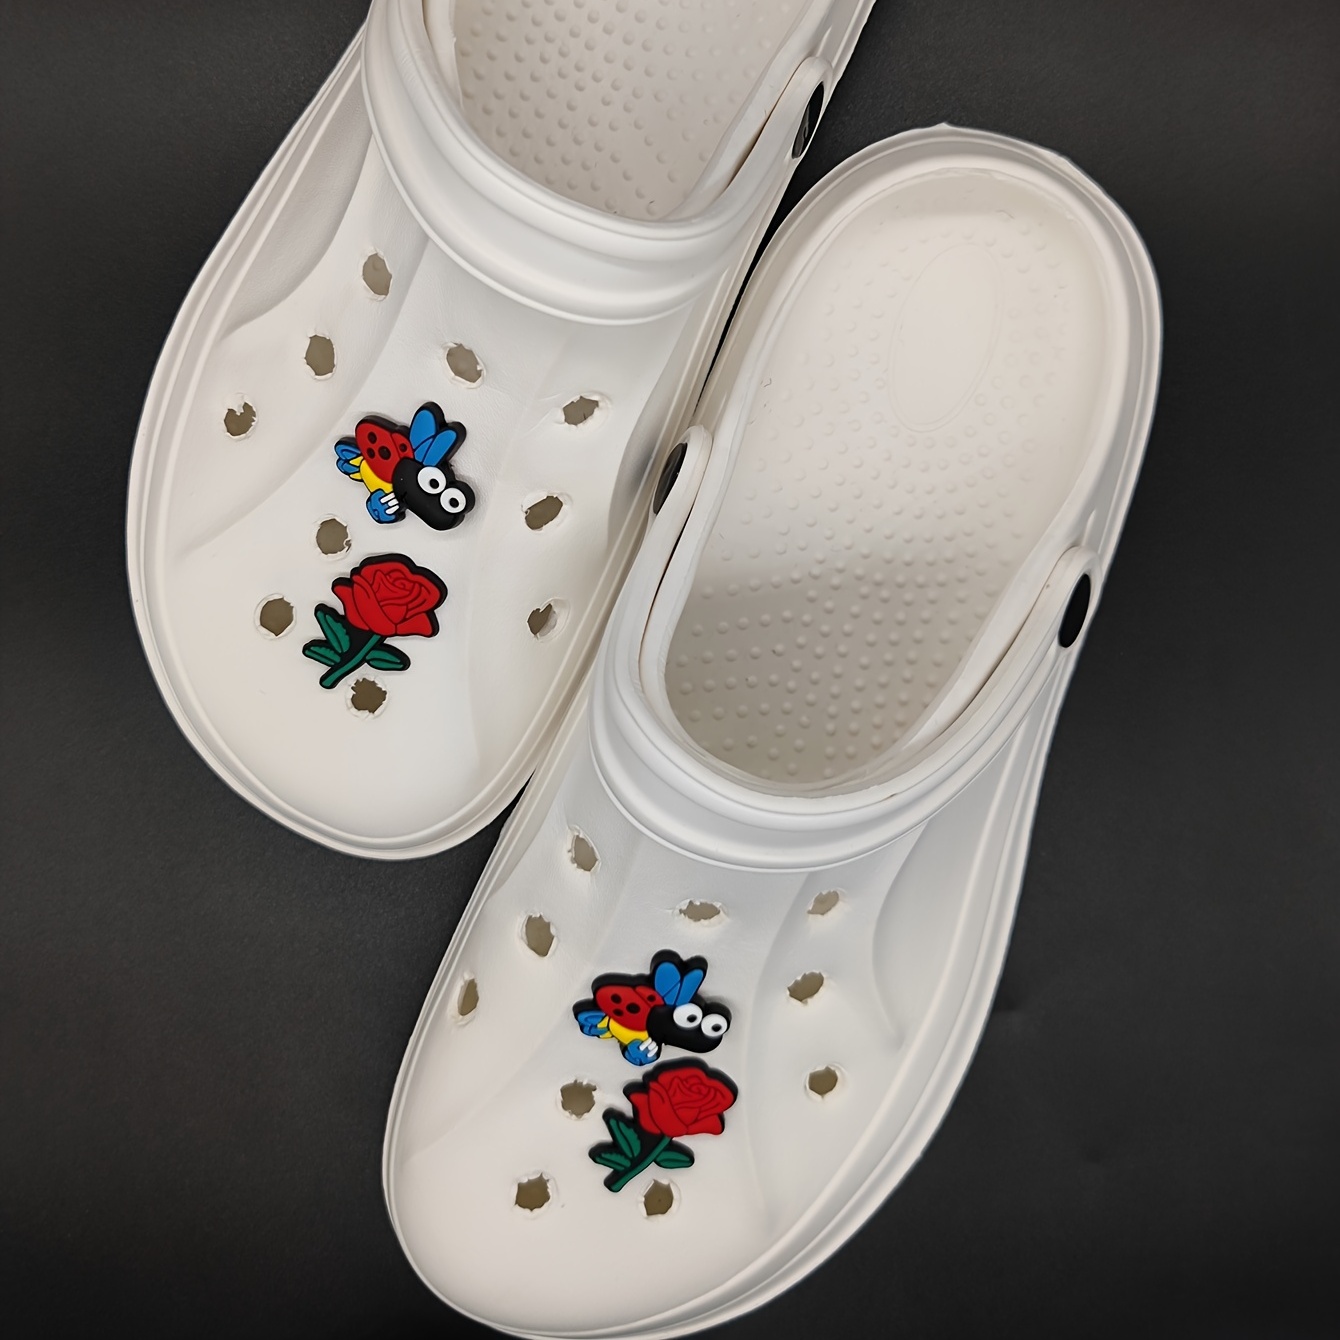 Versatile Women's Shoes Metal Buckle Removable Shoe Accessory Flower  Decoration Shoe Clip Ornament Footwear Decorations